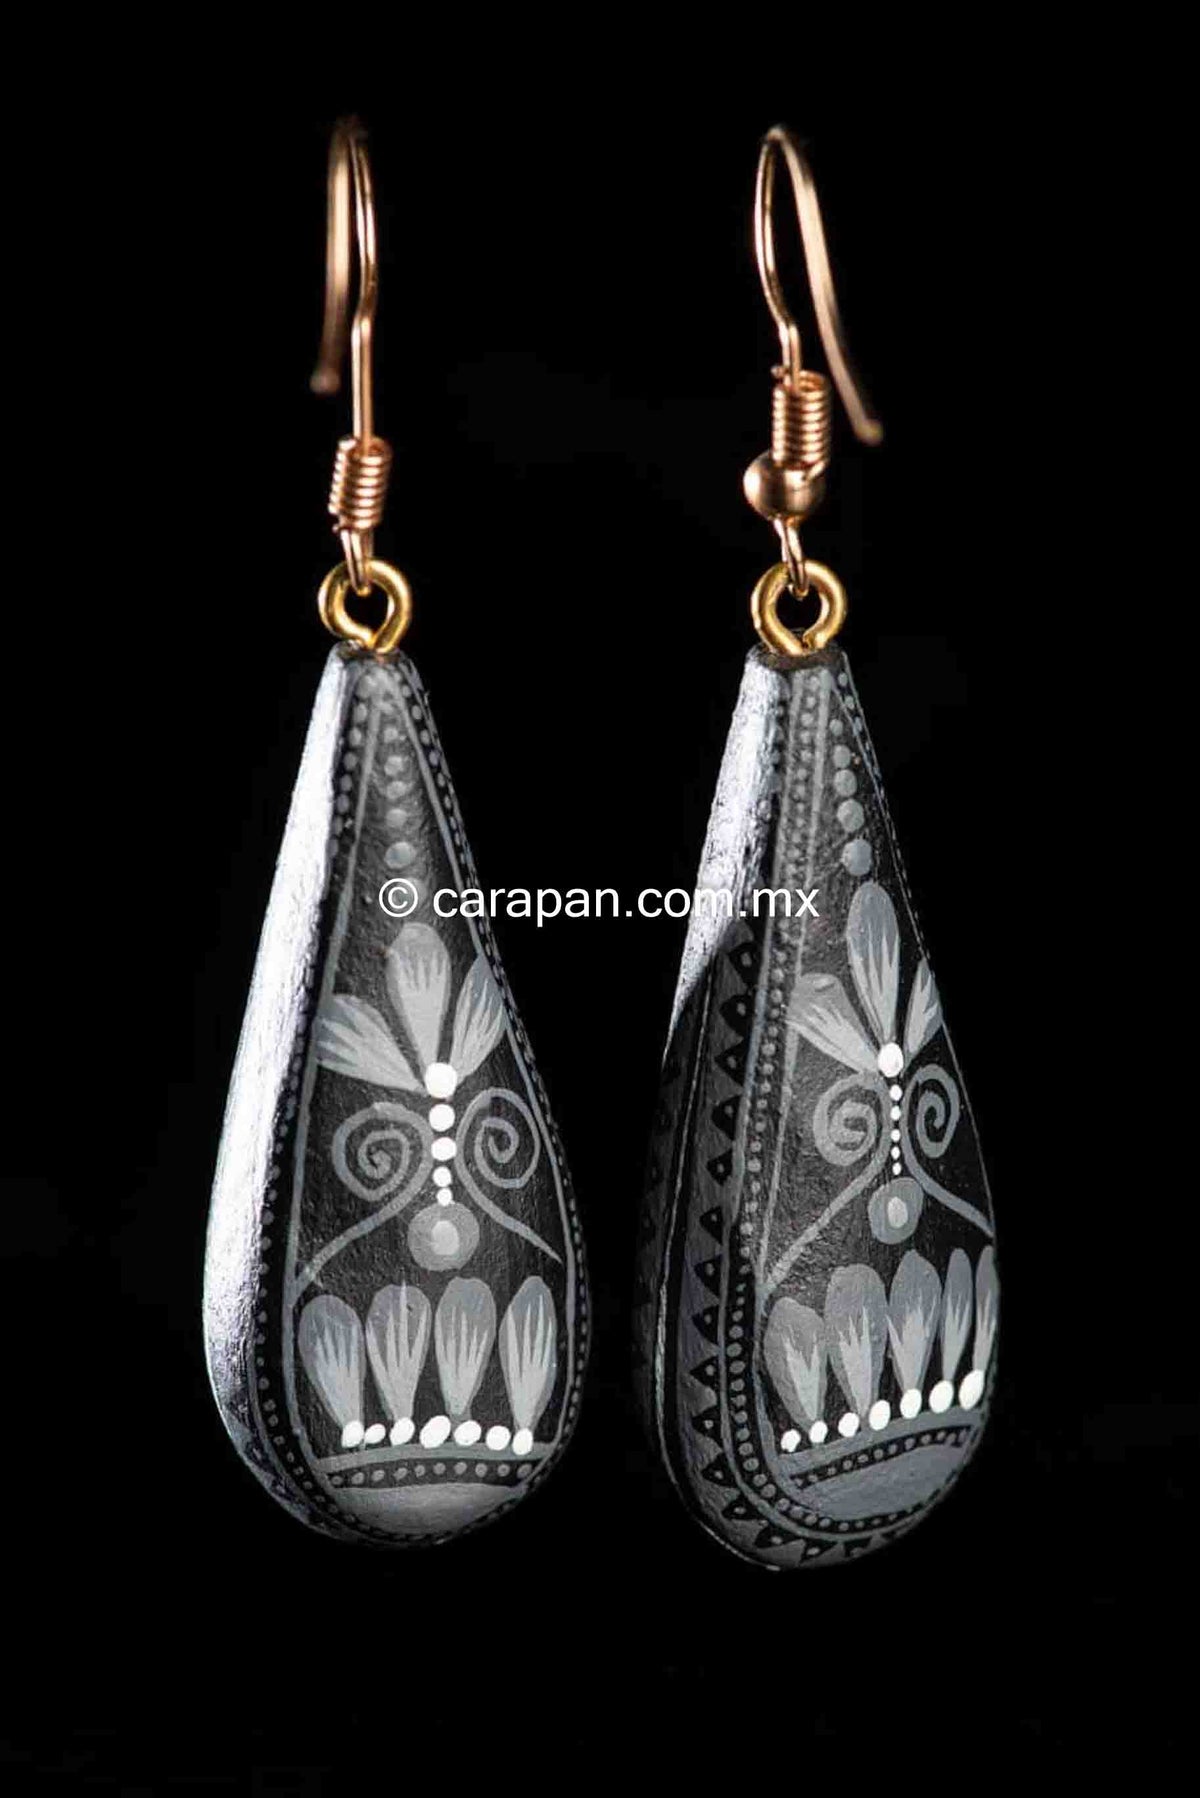 Mexican Earrings Alebrije Style Drop Shaped, Black & White